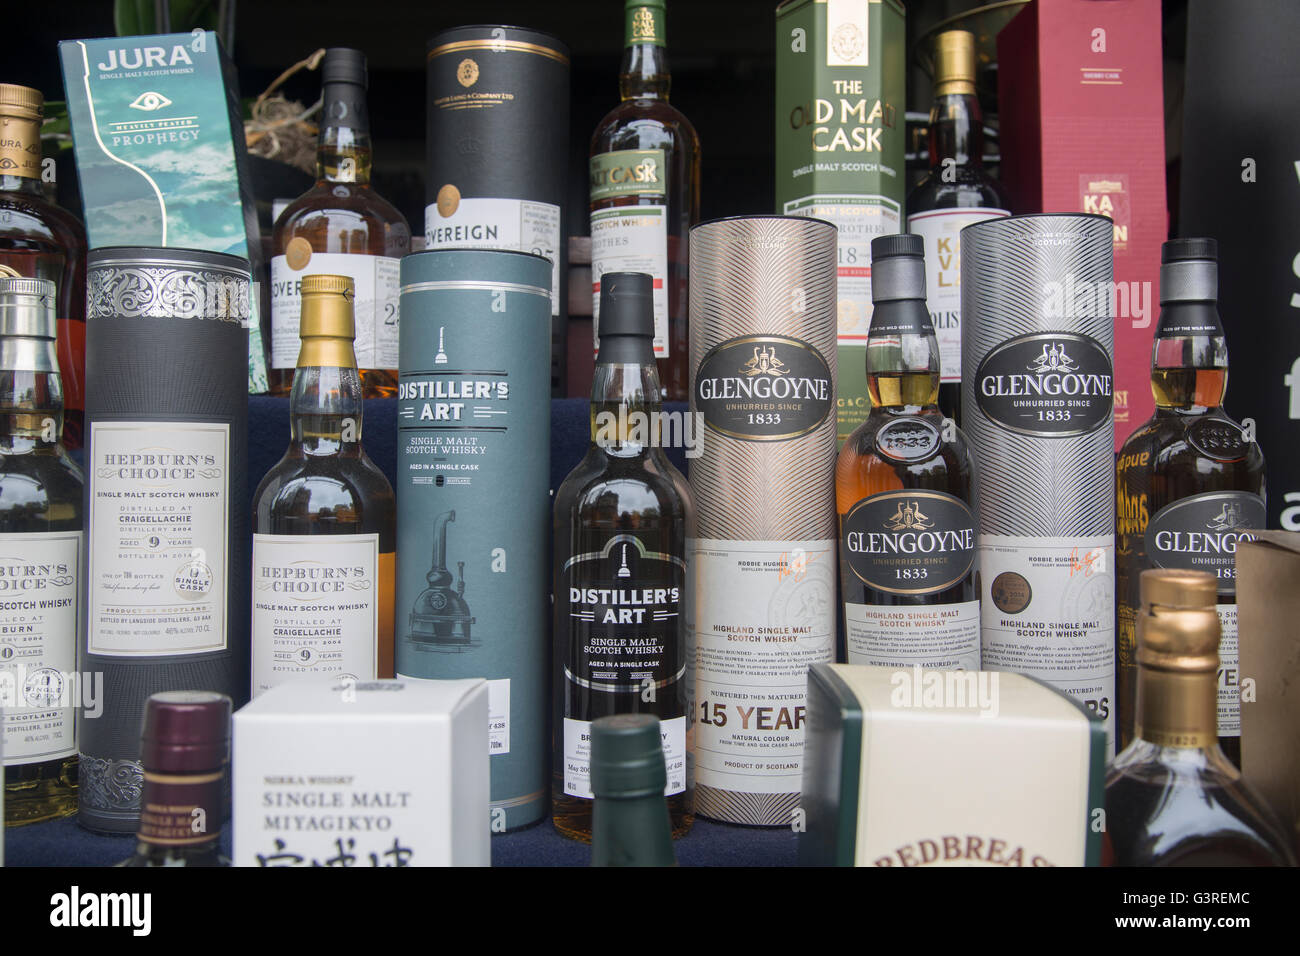 Glengoyne and Distiller's Art Whisky Bottles; Edinburgh; Scotland Stock Photo